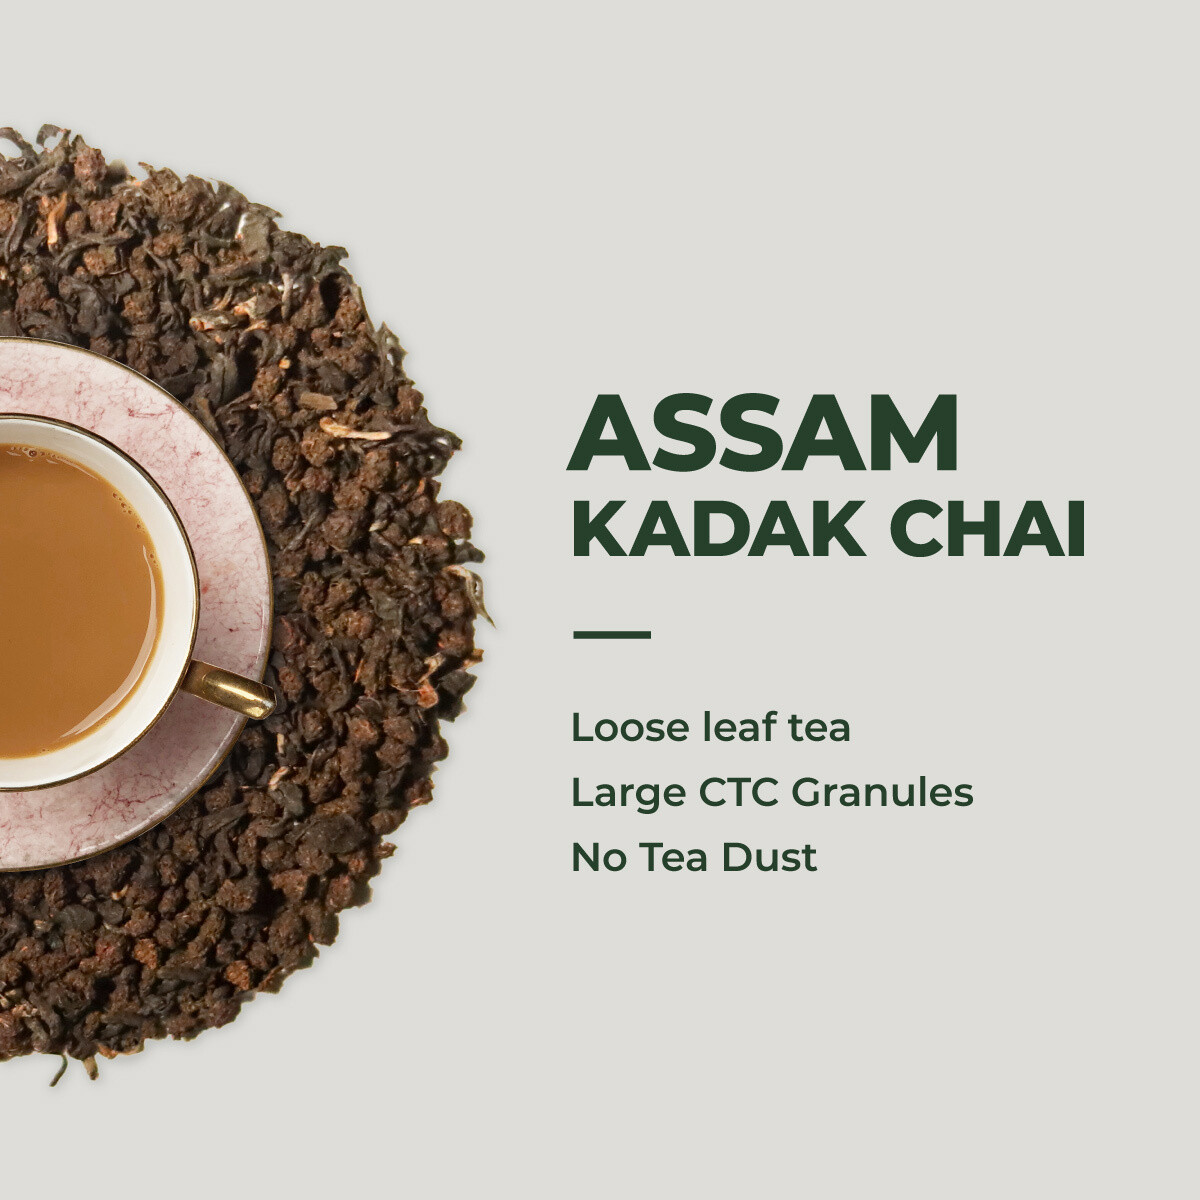 Assam Kadak Chai